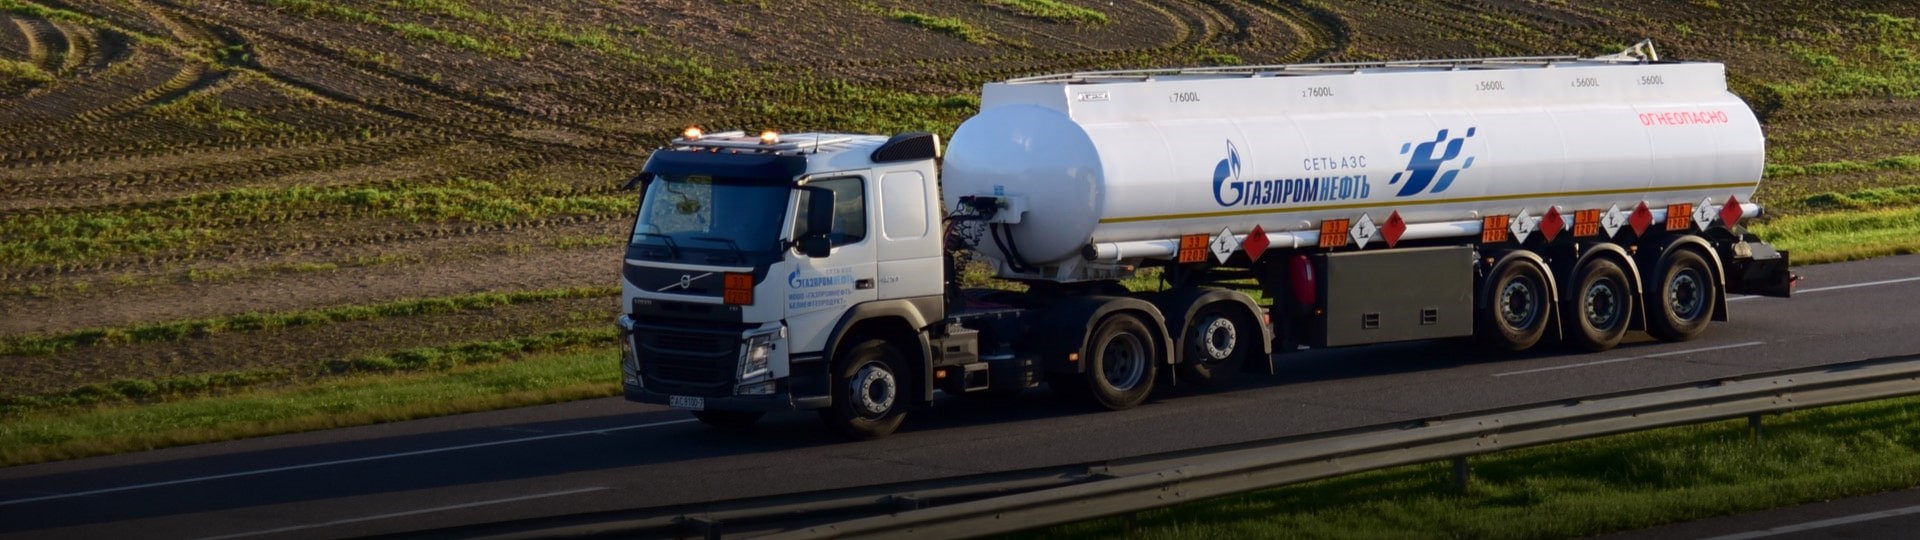 Maďarsko podepsalo s ruským Gazpromem novou smlouvu o dodávkách plynu